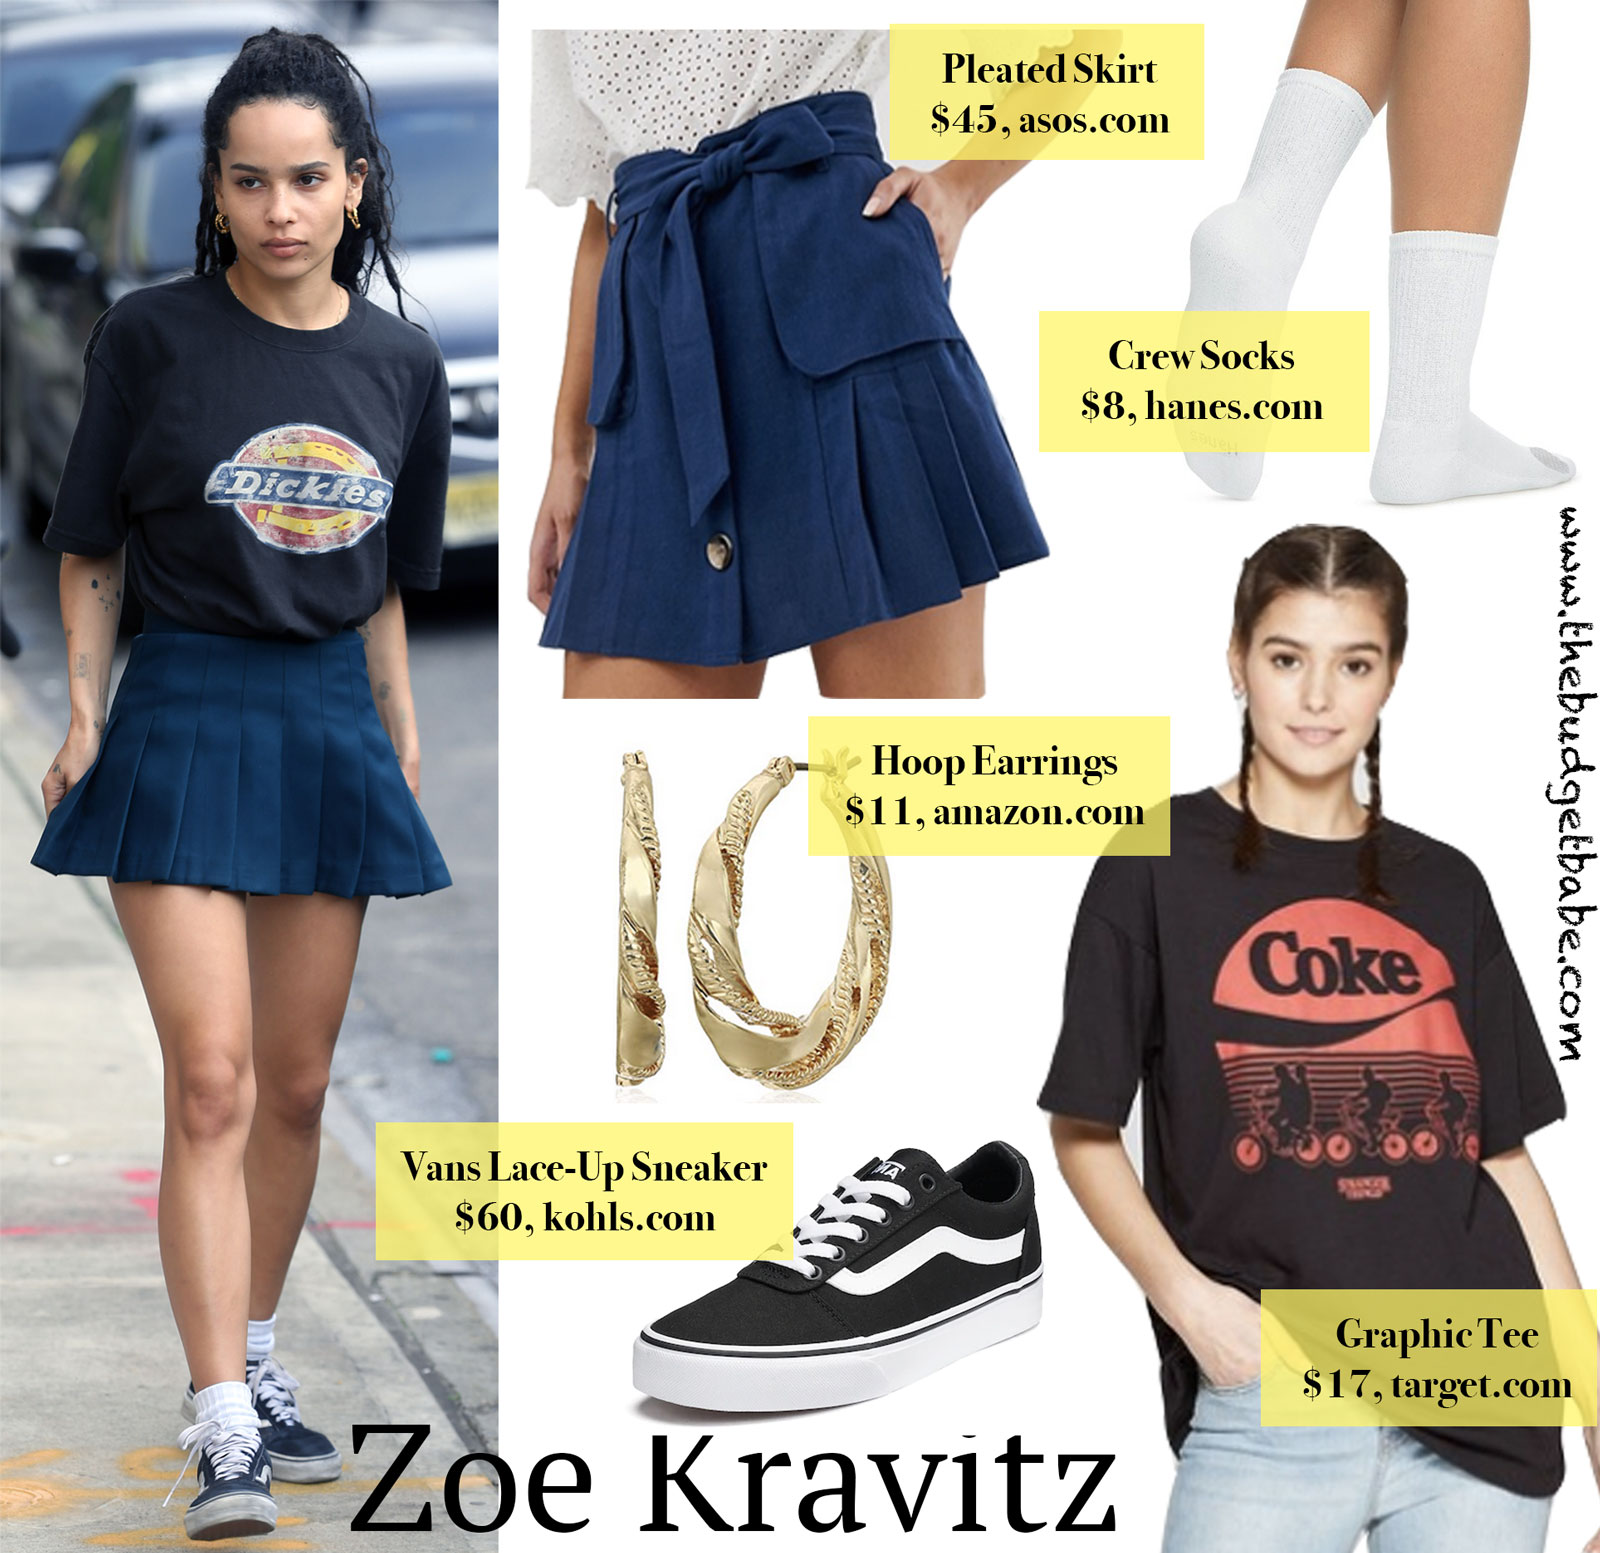 Zoe Kravitz Pleated Skirt Graphic Tee